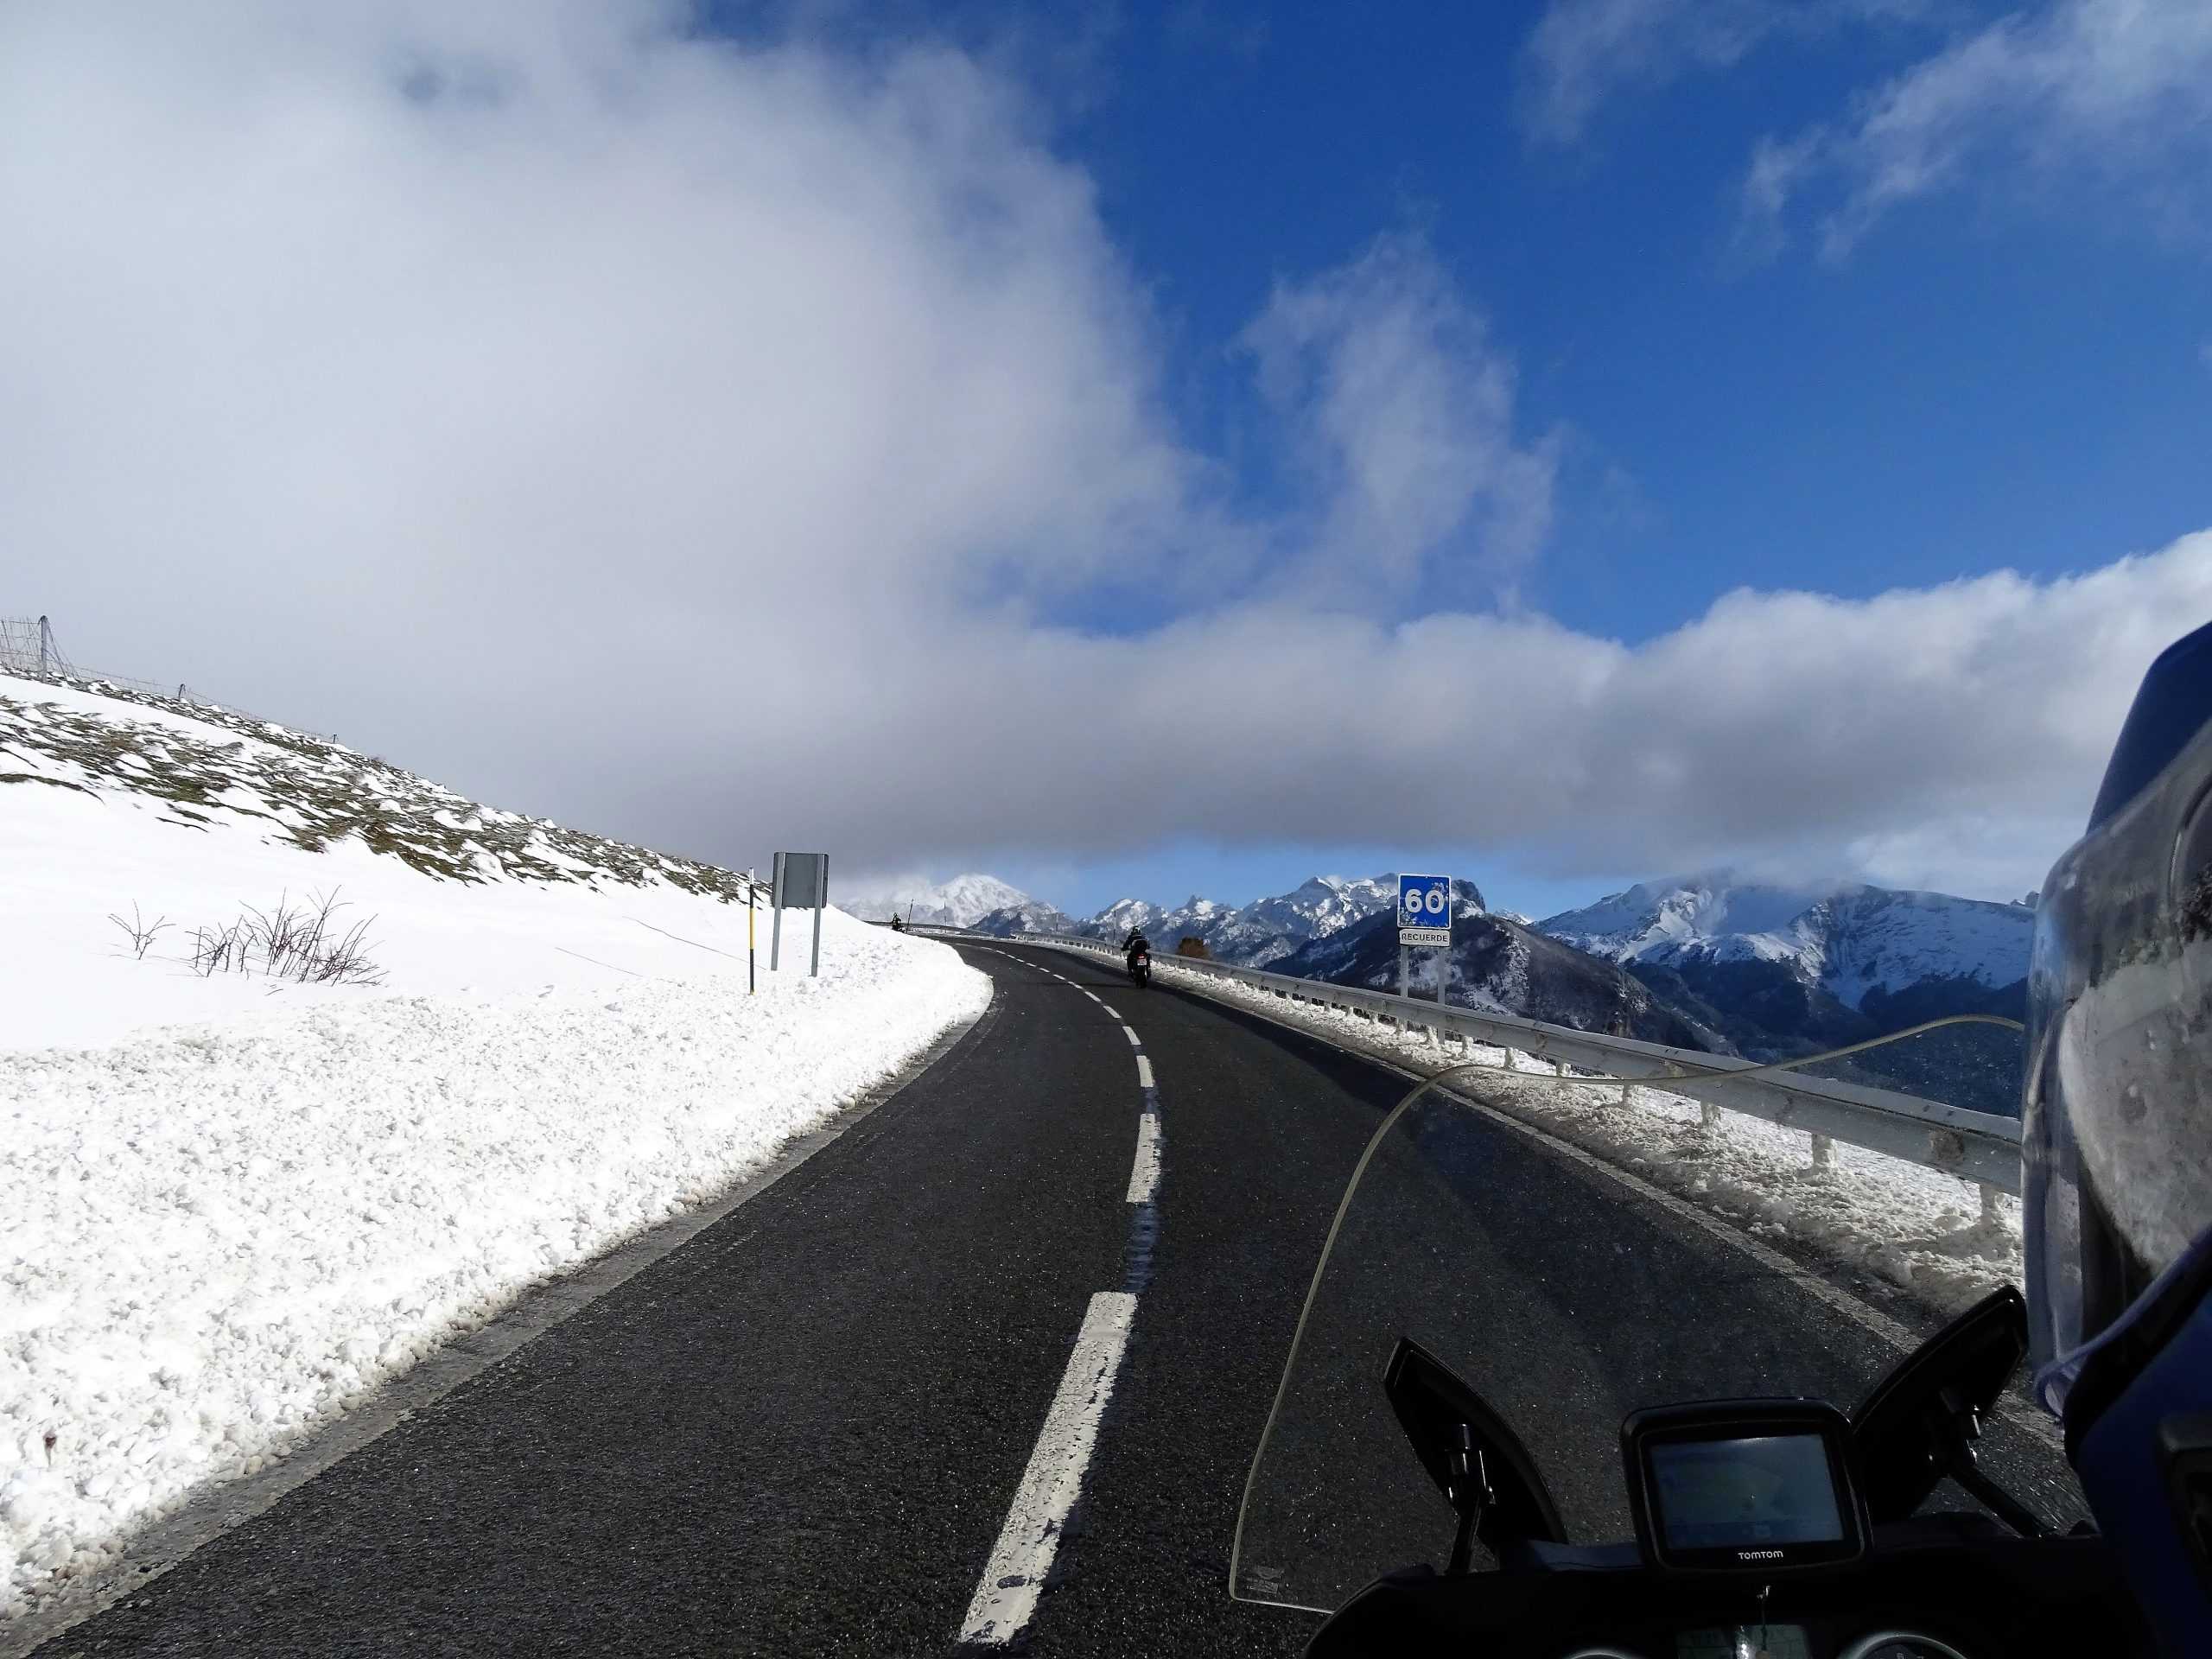 carretera con nieve